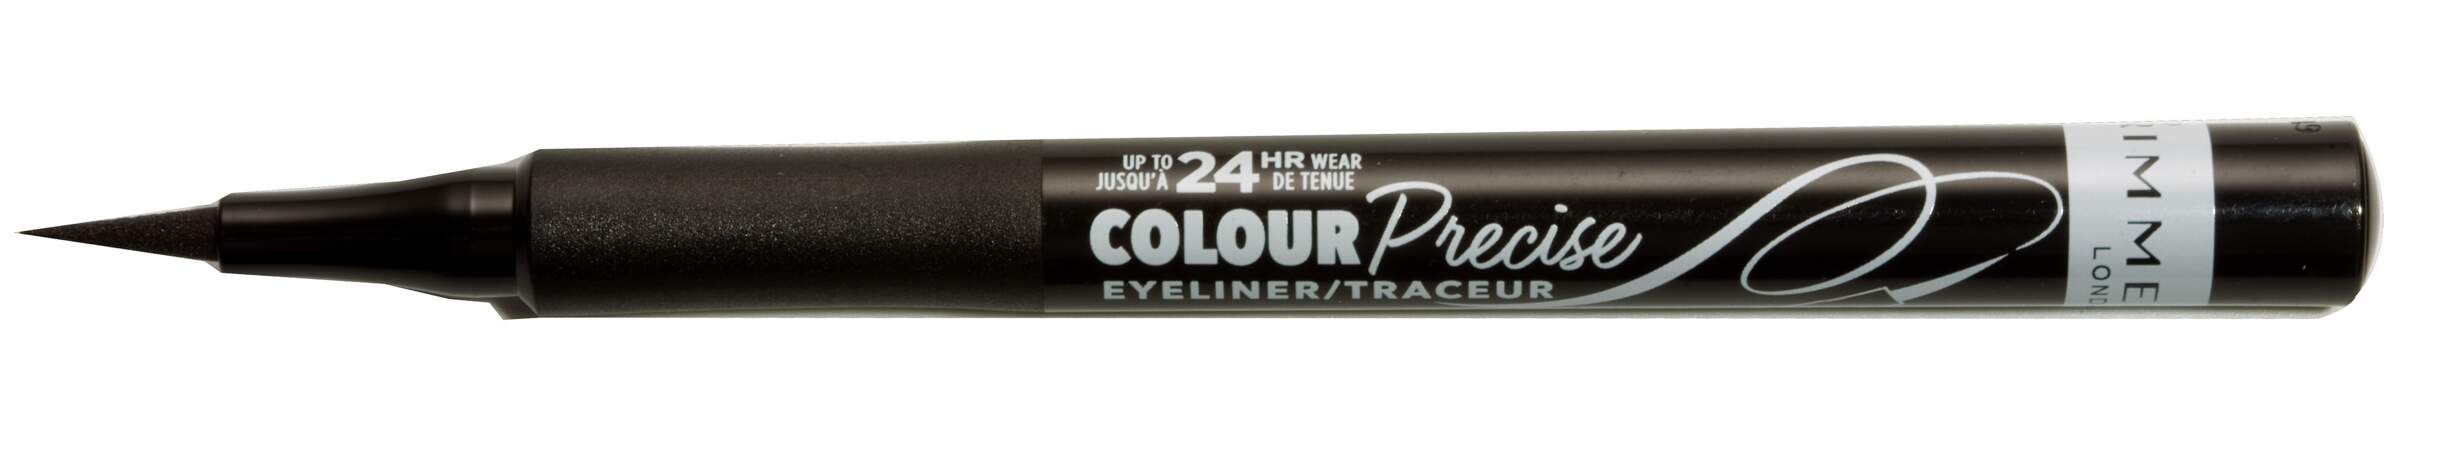 Colour Precise Eyeliner, Rimmel - 4,50€